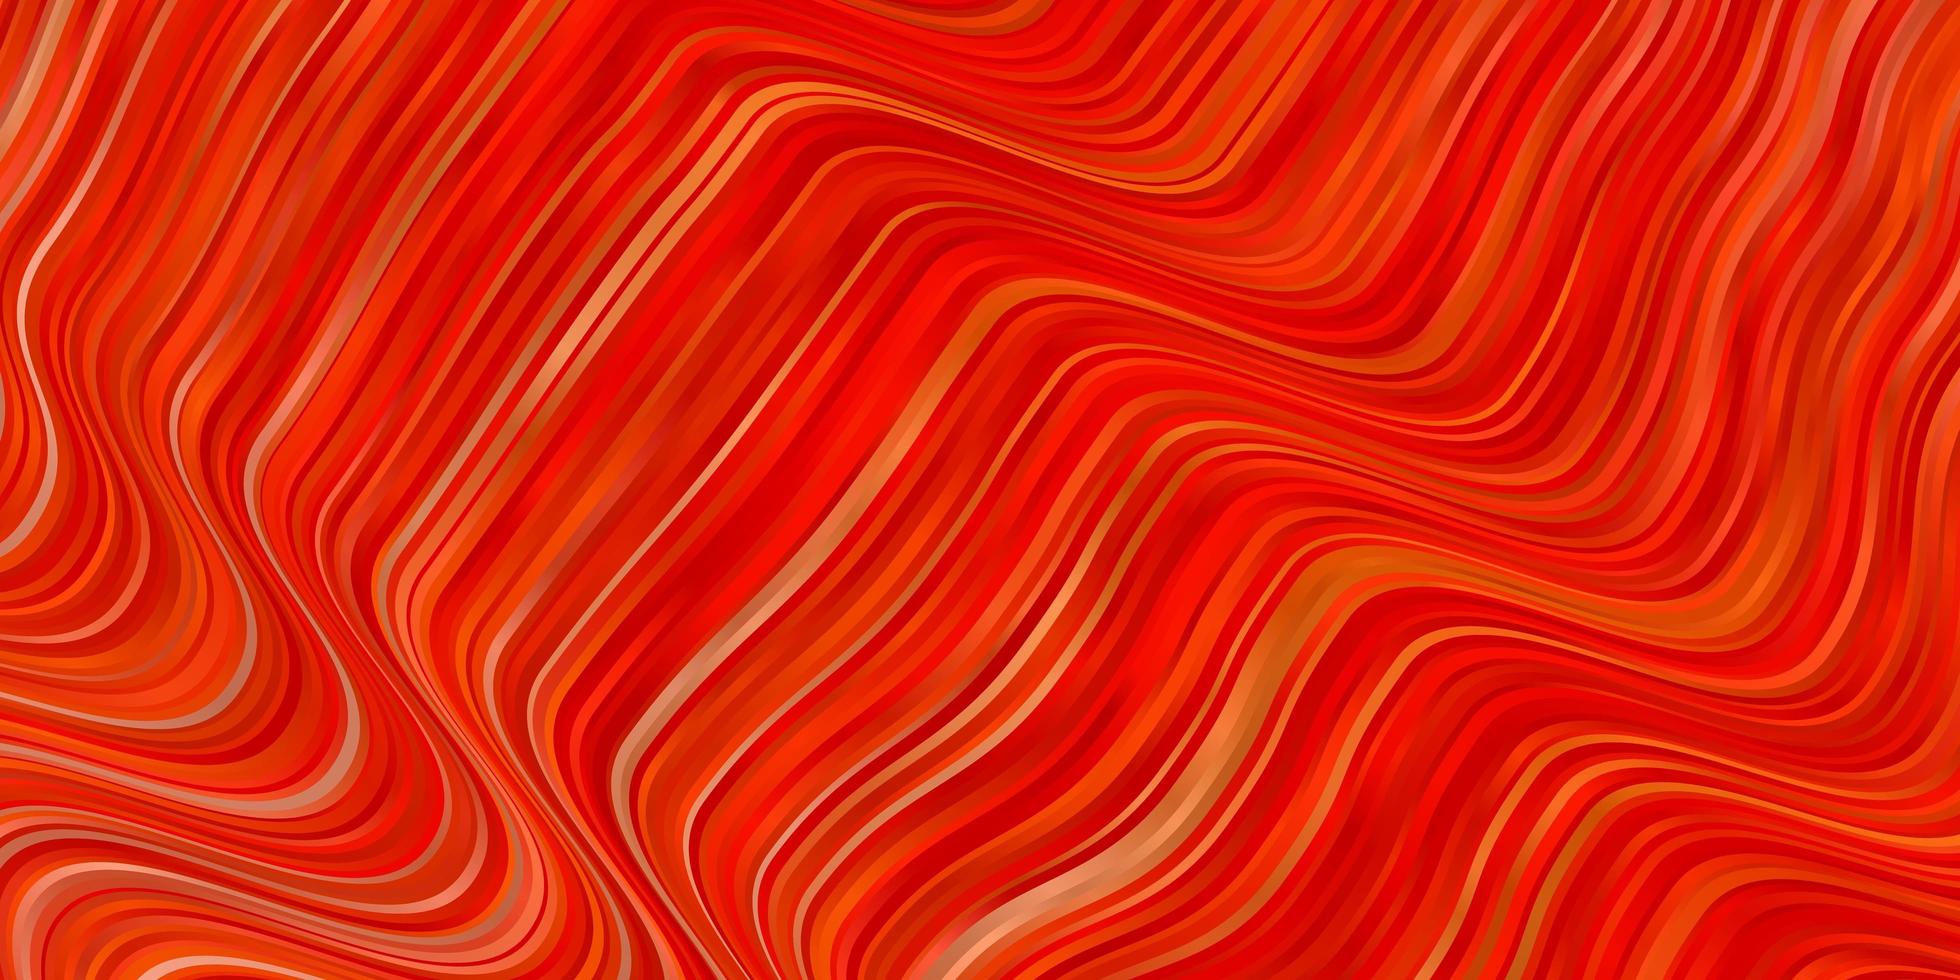 ljus orange vektor bakgrund med böjda linjer. färgglada geometriska prov med lutningskurvor. mönster för affärshäften, broschyrer